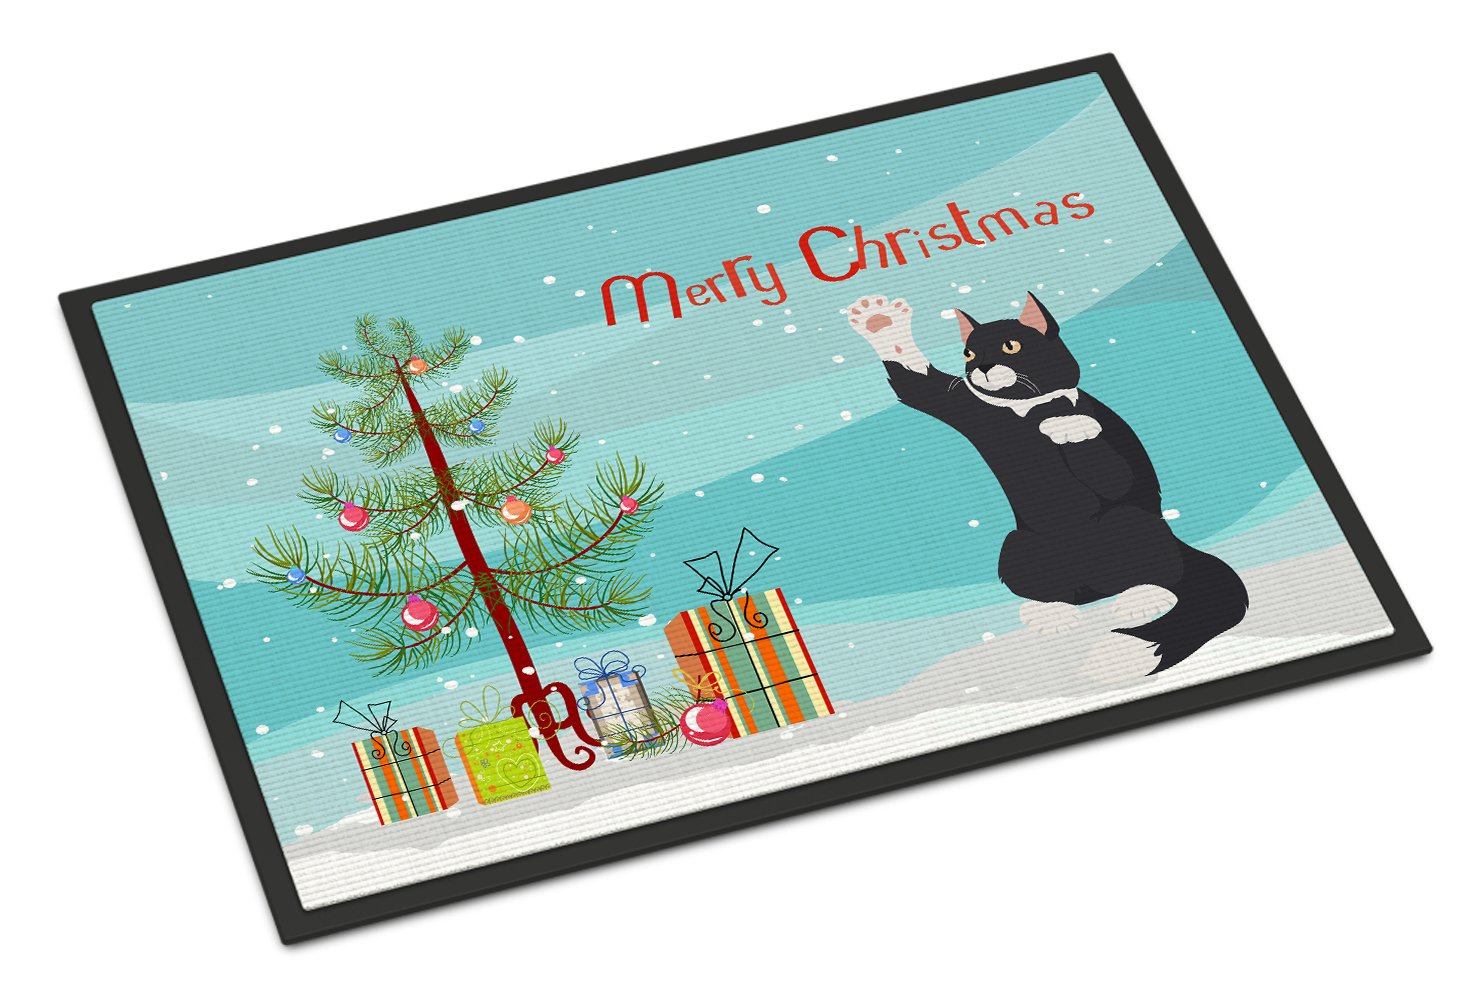 American Polydactyl Cat Merry Christmas Indoor or Outdoor Mat 24x36 CK4742JMAT by Caroline's Treasures